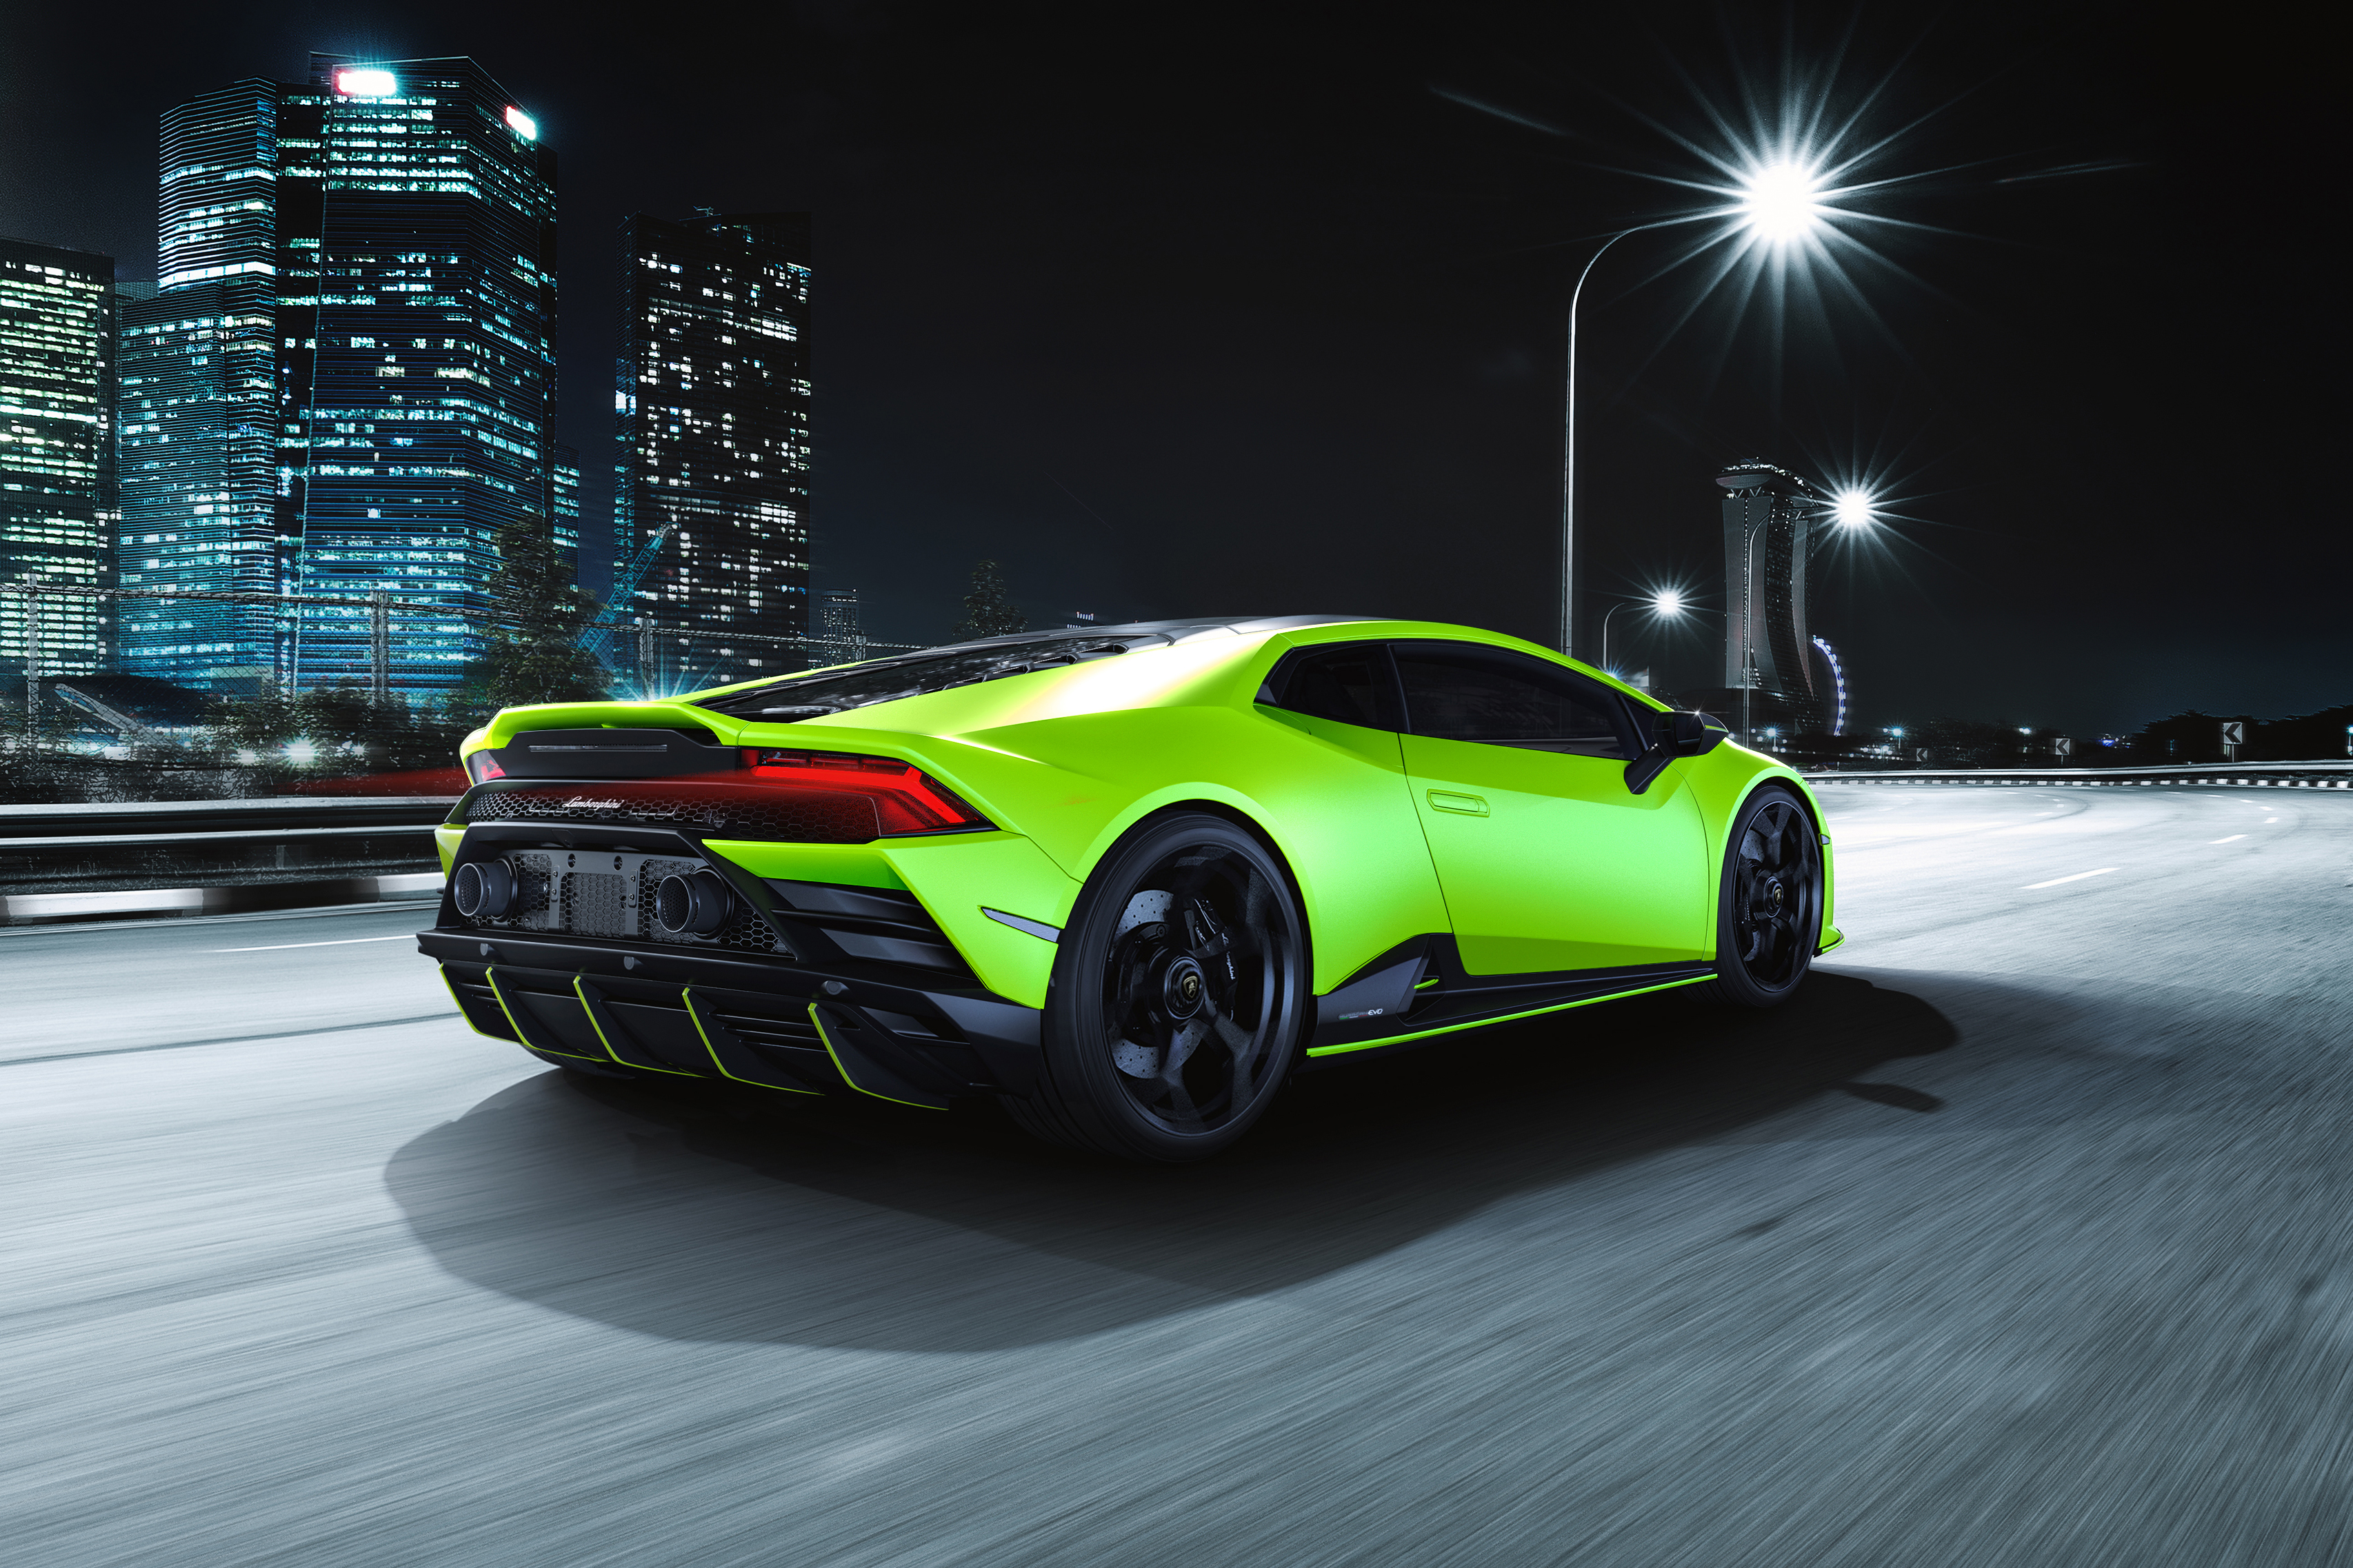 Download mobile wallpaper Lamborghini, Vehicles, Lamborghini Huracán Evo for free.